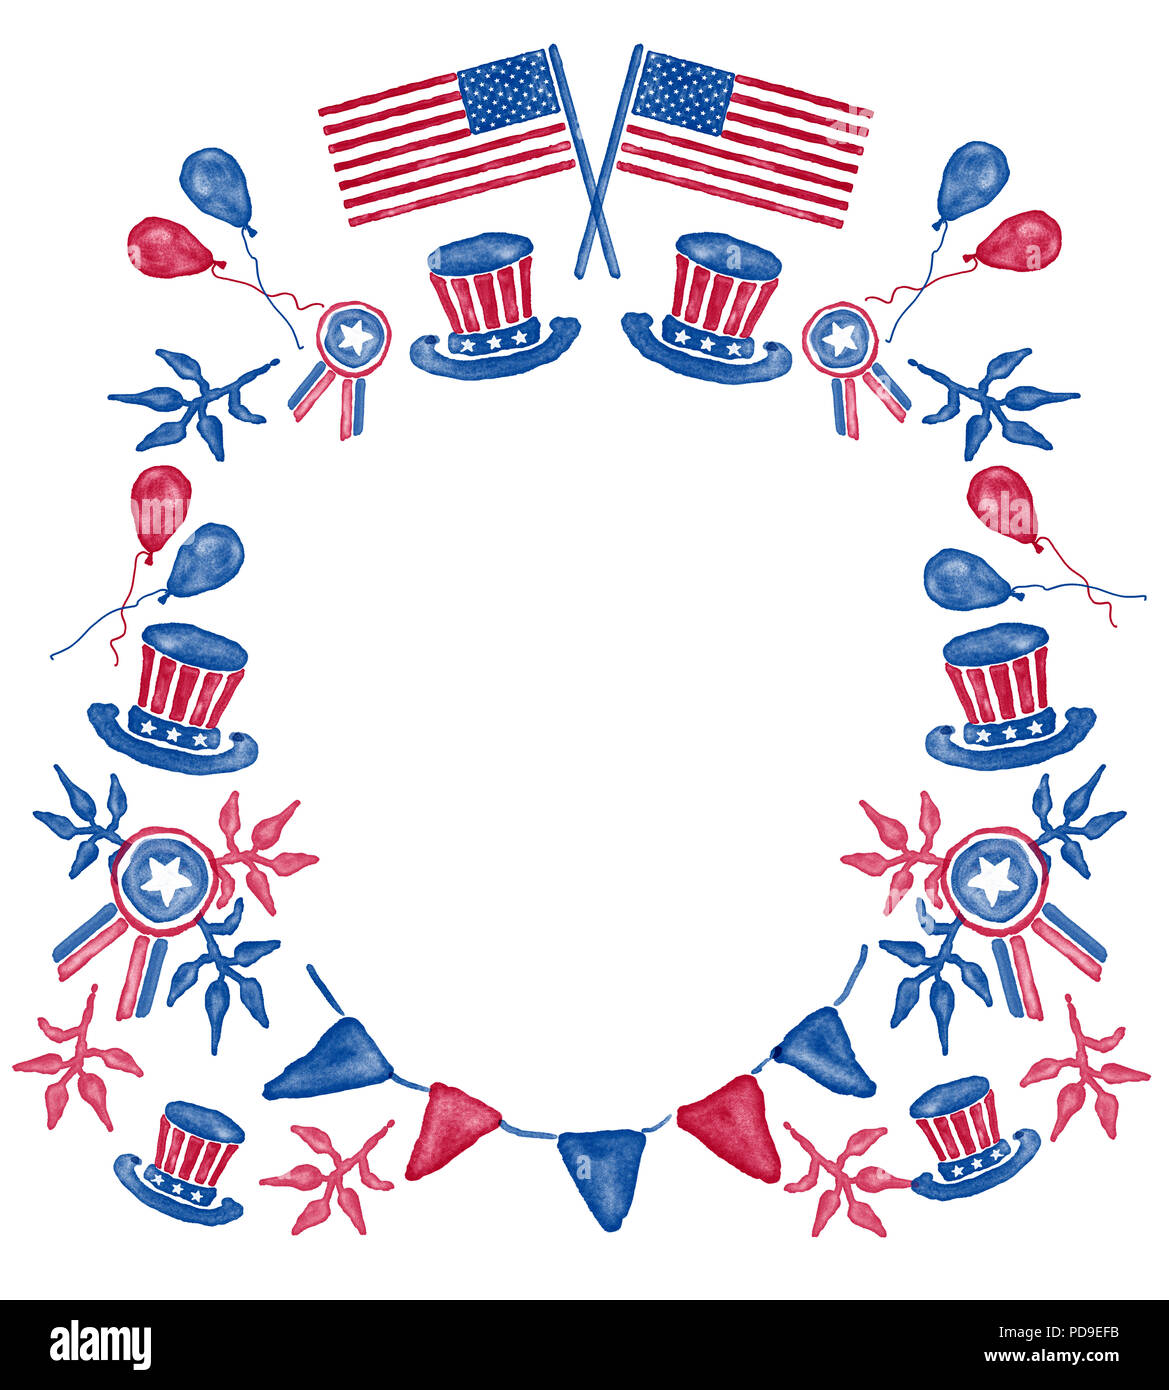 Aquarelle numérique frontière, couronne, avec place pour citer avec thème de 4e de juillet et USA drapeaux, ballons, pour la Journée de l'Indépendance Américaine Banque D'Images